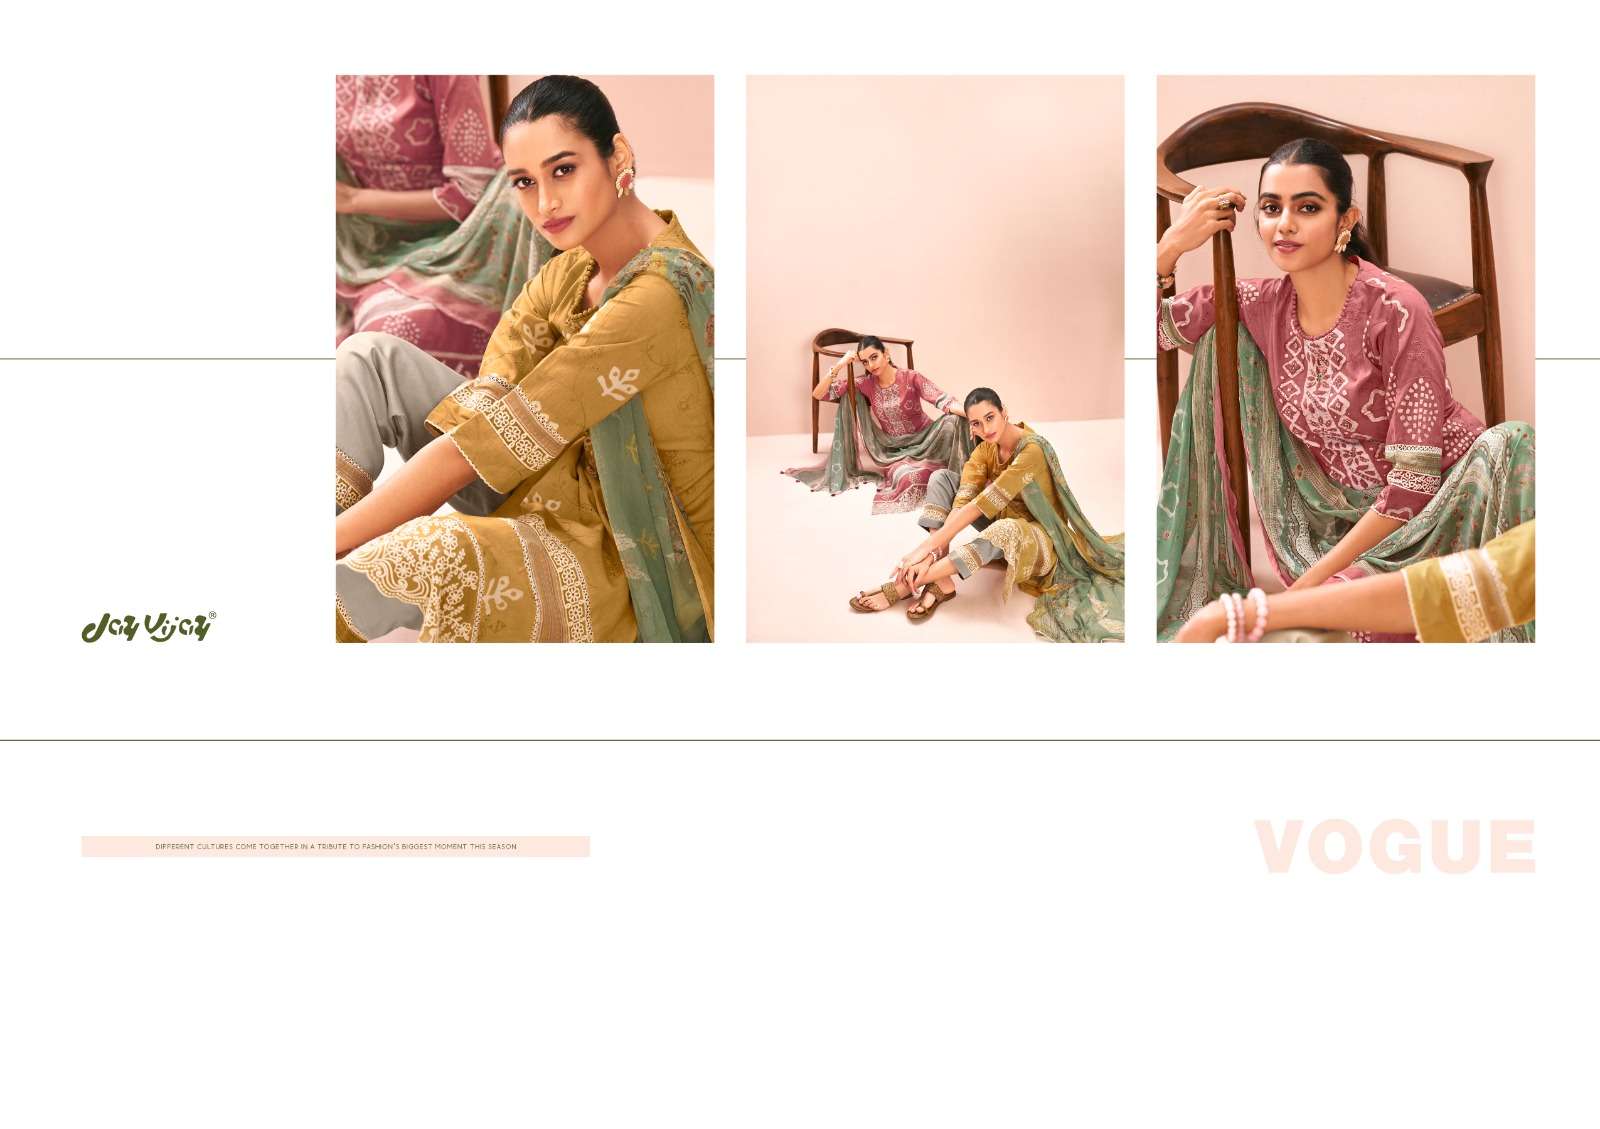 jayvijay oksana vol-2 8321-8328 series exclusive designer salwar kameez catalogue collection 2023